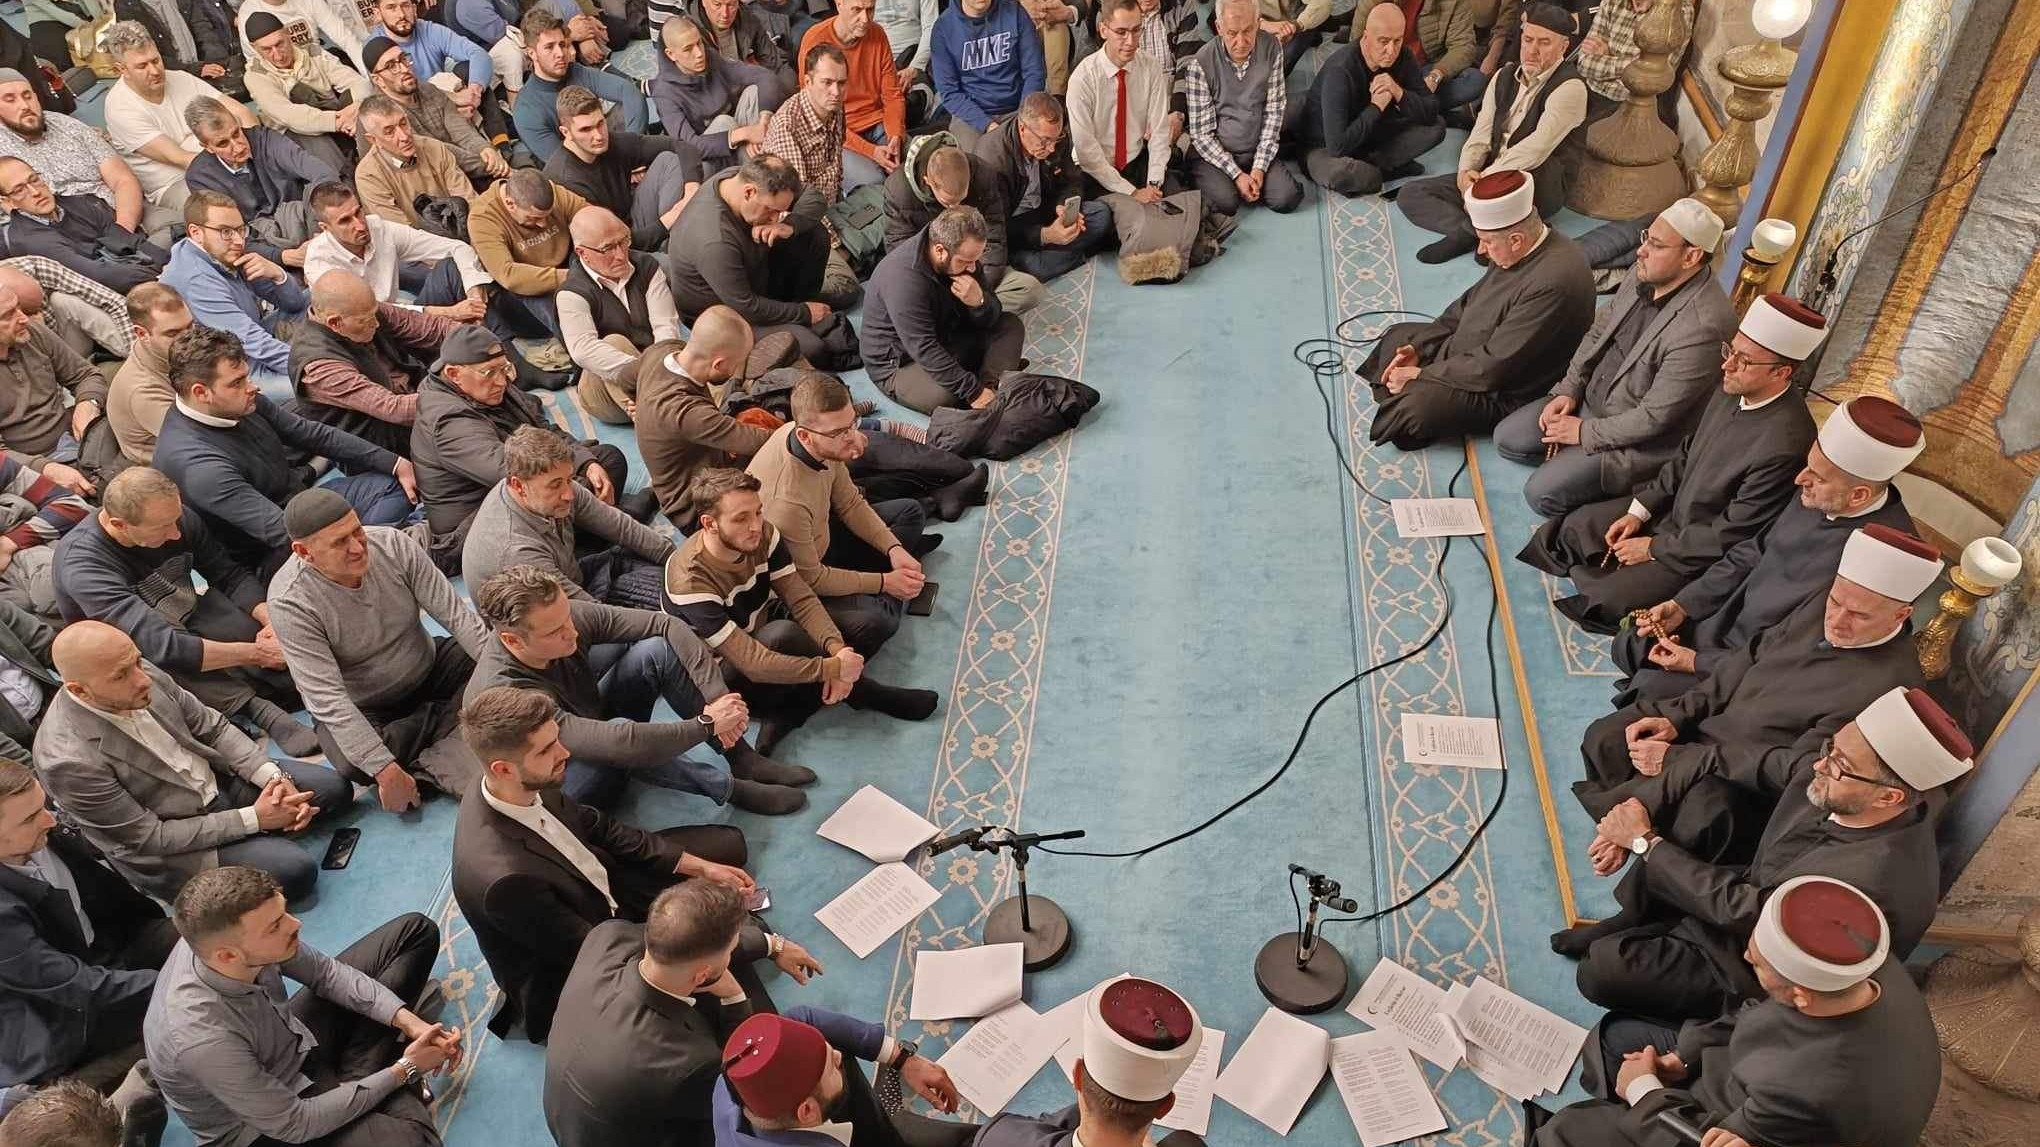 Lejletul-berat: Centralni program MIZ Sarajevo proučen u Carevoj džamiji 